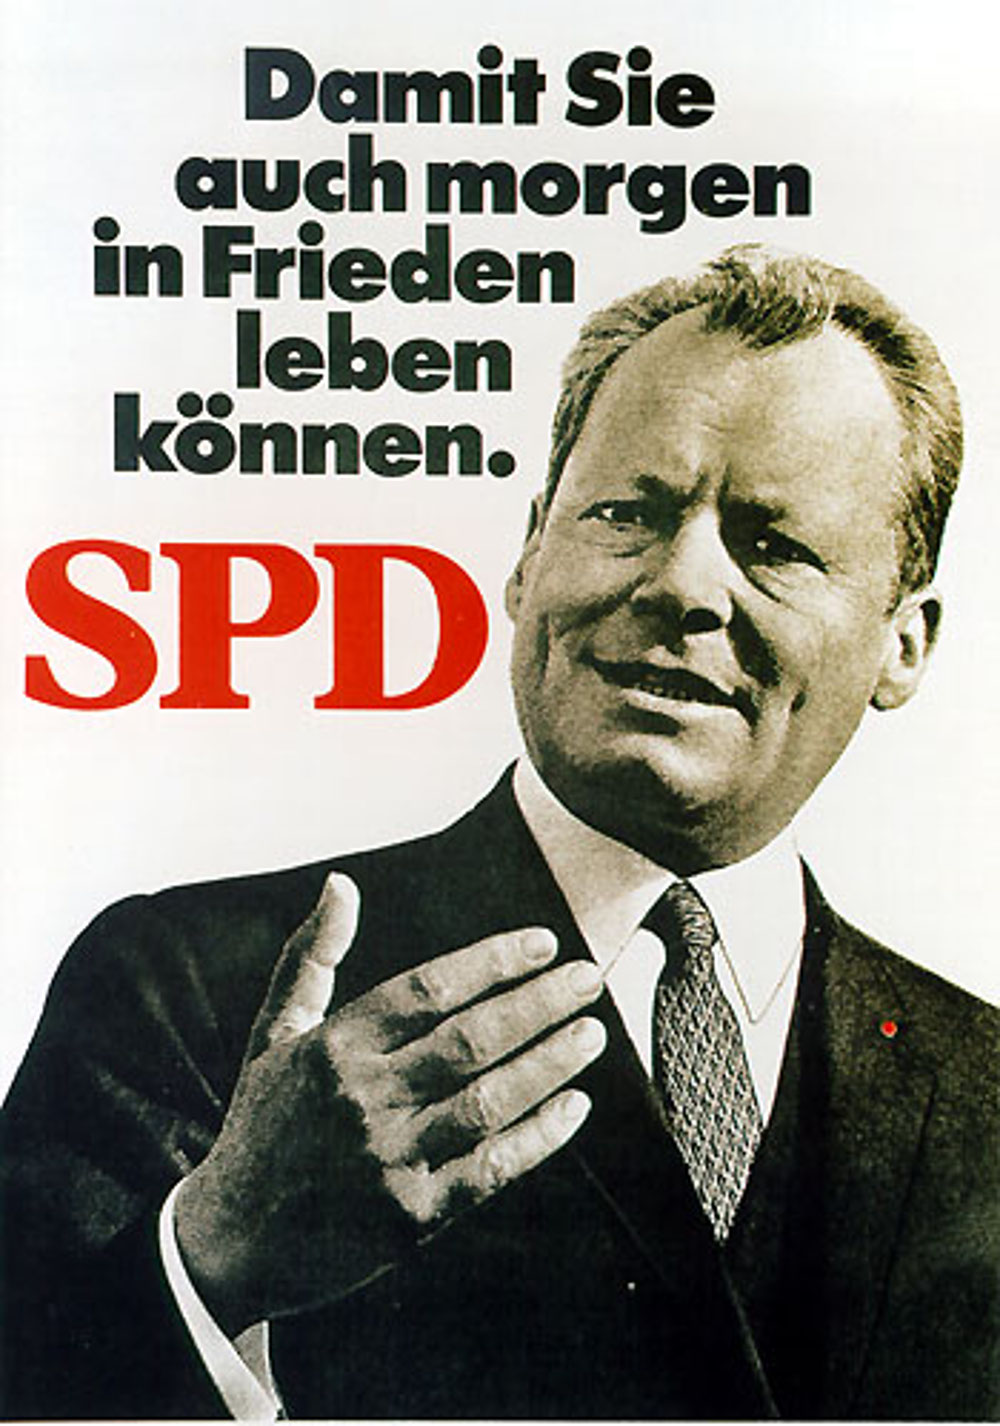 SPD-Wahlplakat Bundestagswahl 1969 mit Willy Brandt: Damit Sie auch morgen in Frieden leben können